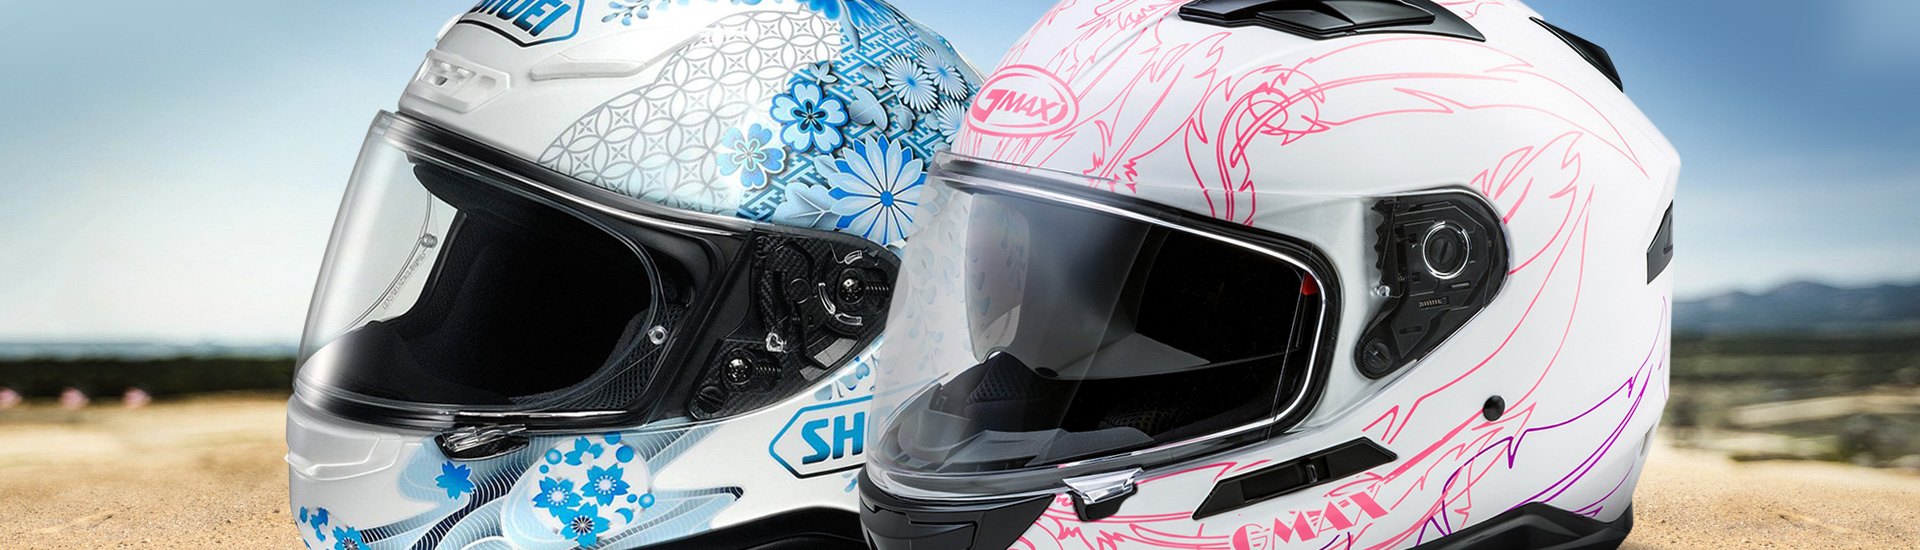 Powersports Women's Helmets